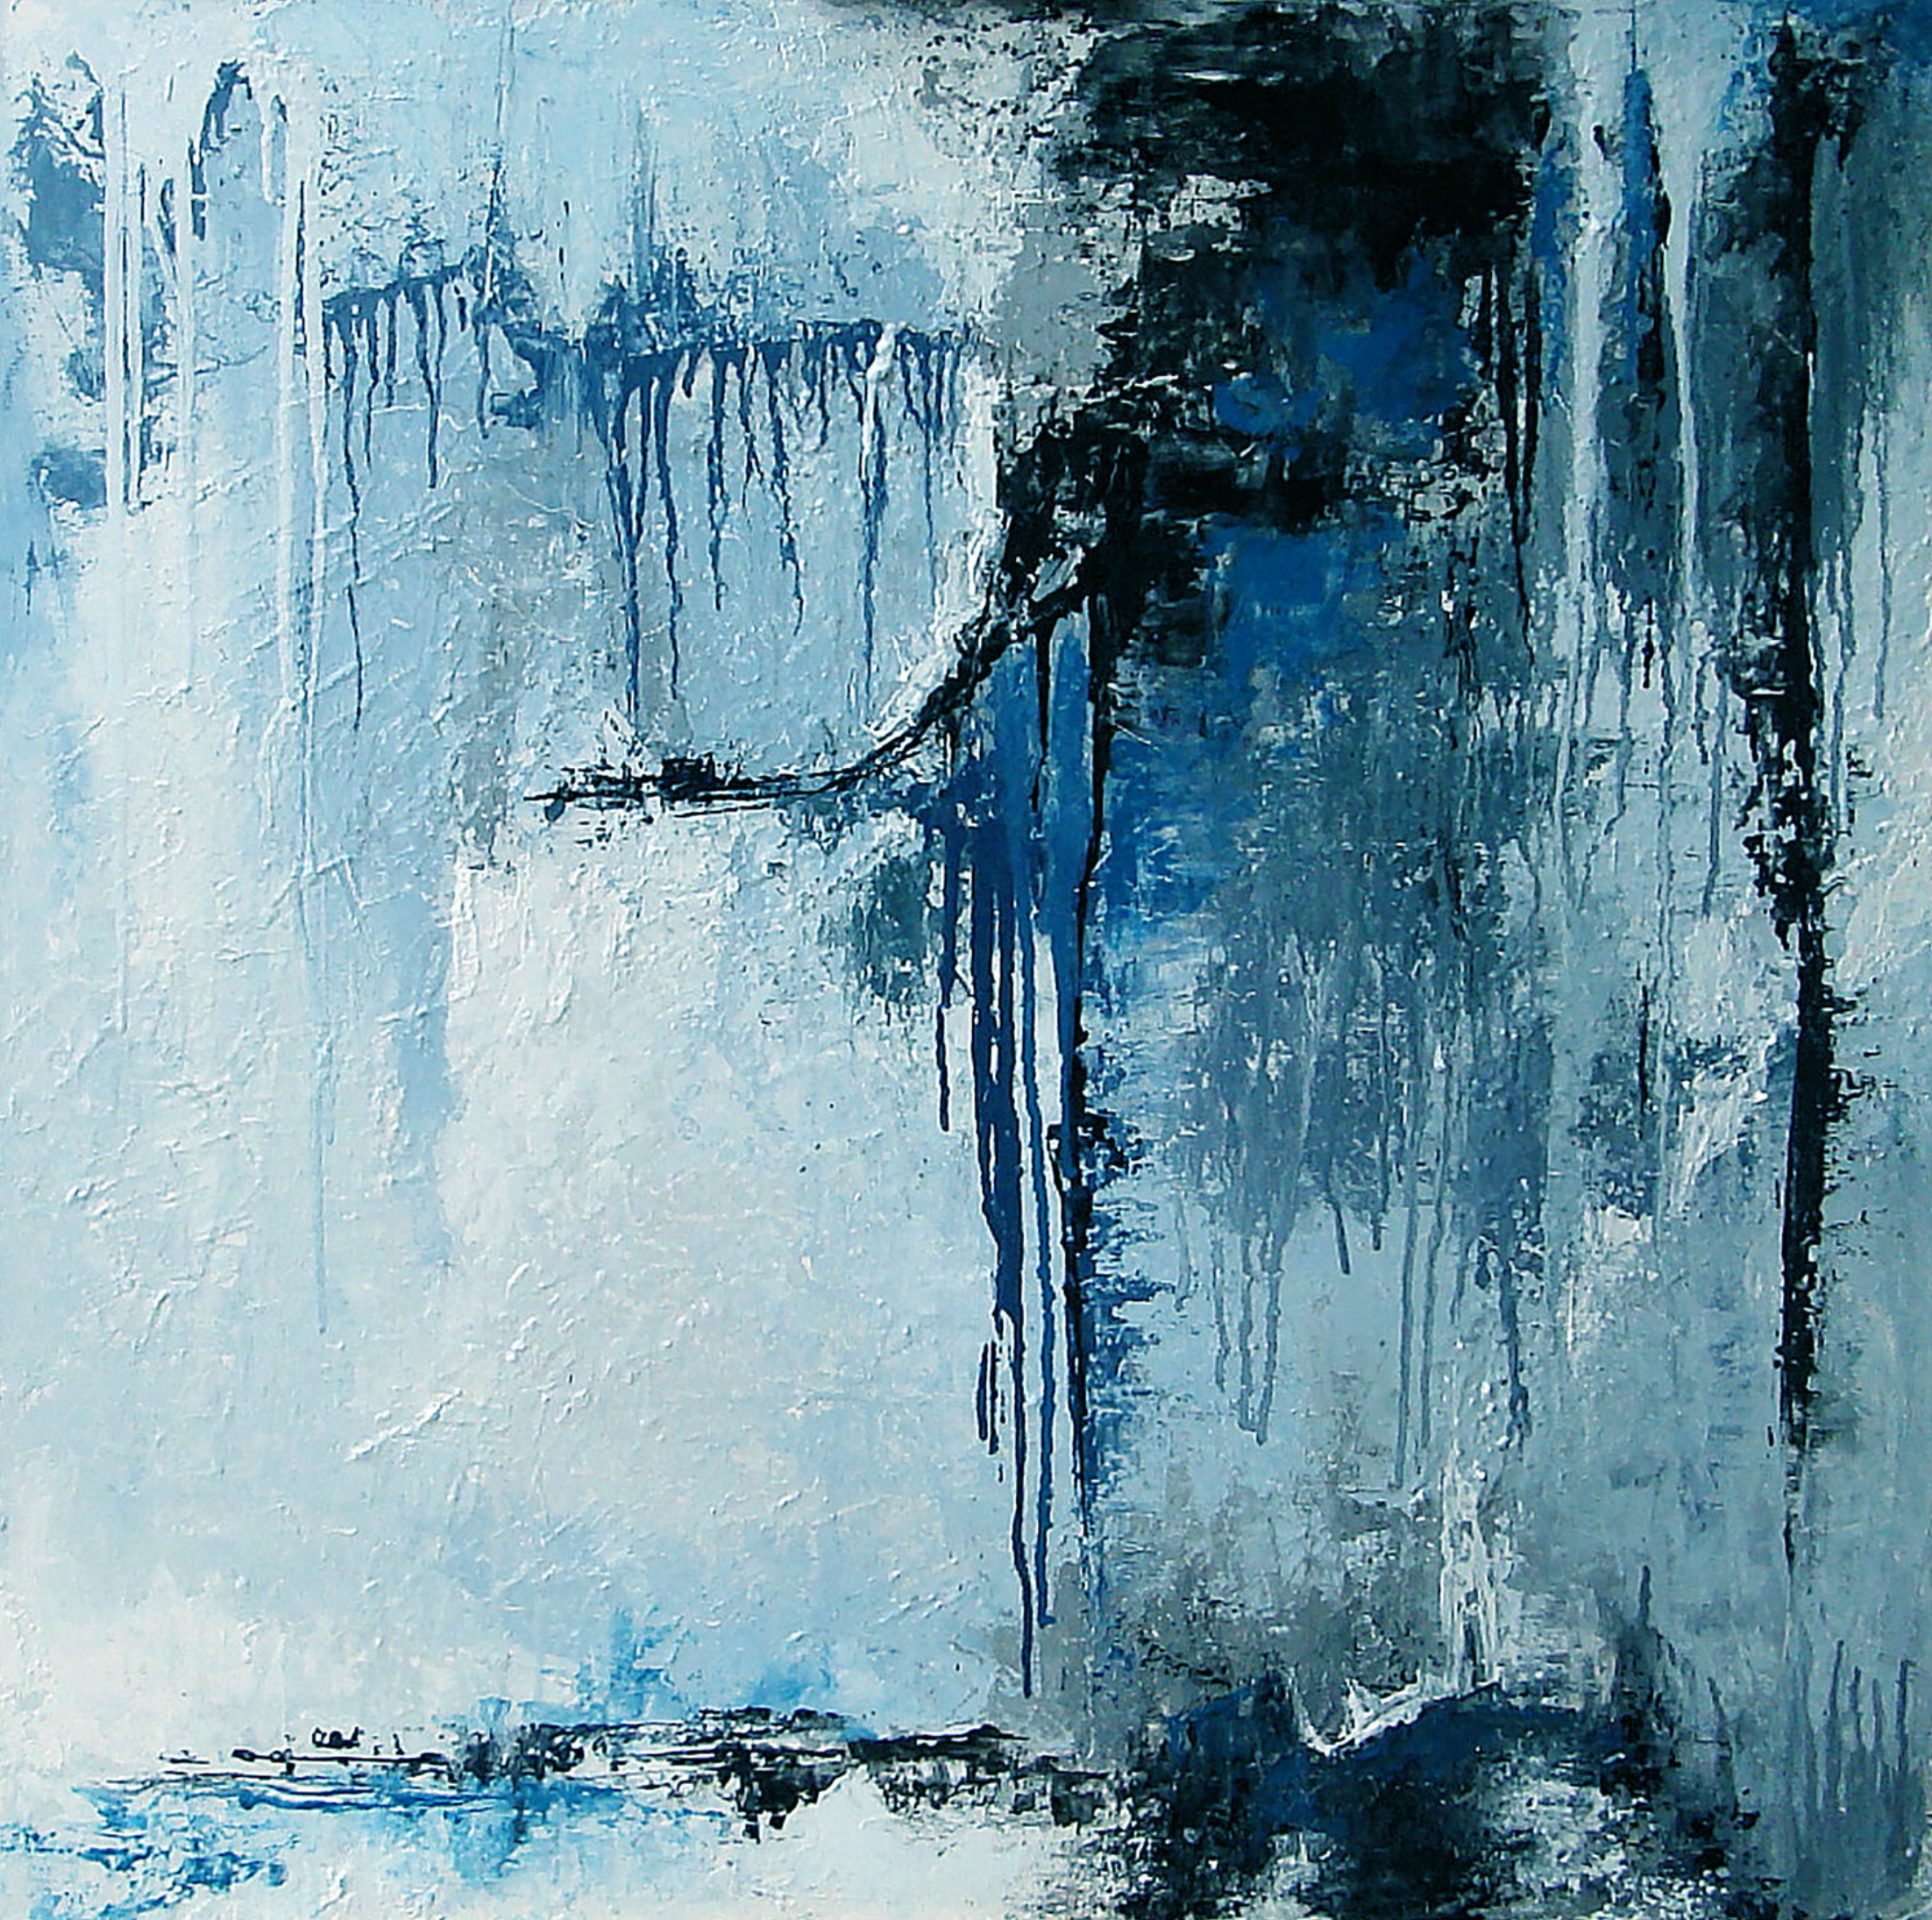 La pittura astratta "Acier" di Françoise Dugourd-Caput mostra impronte di metallo fuso che cola su rilievi che ricordano un muro o una brusca scogliera di materia grigia e blu delimitata dal blu notte. Un'atmosfera fredda